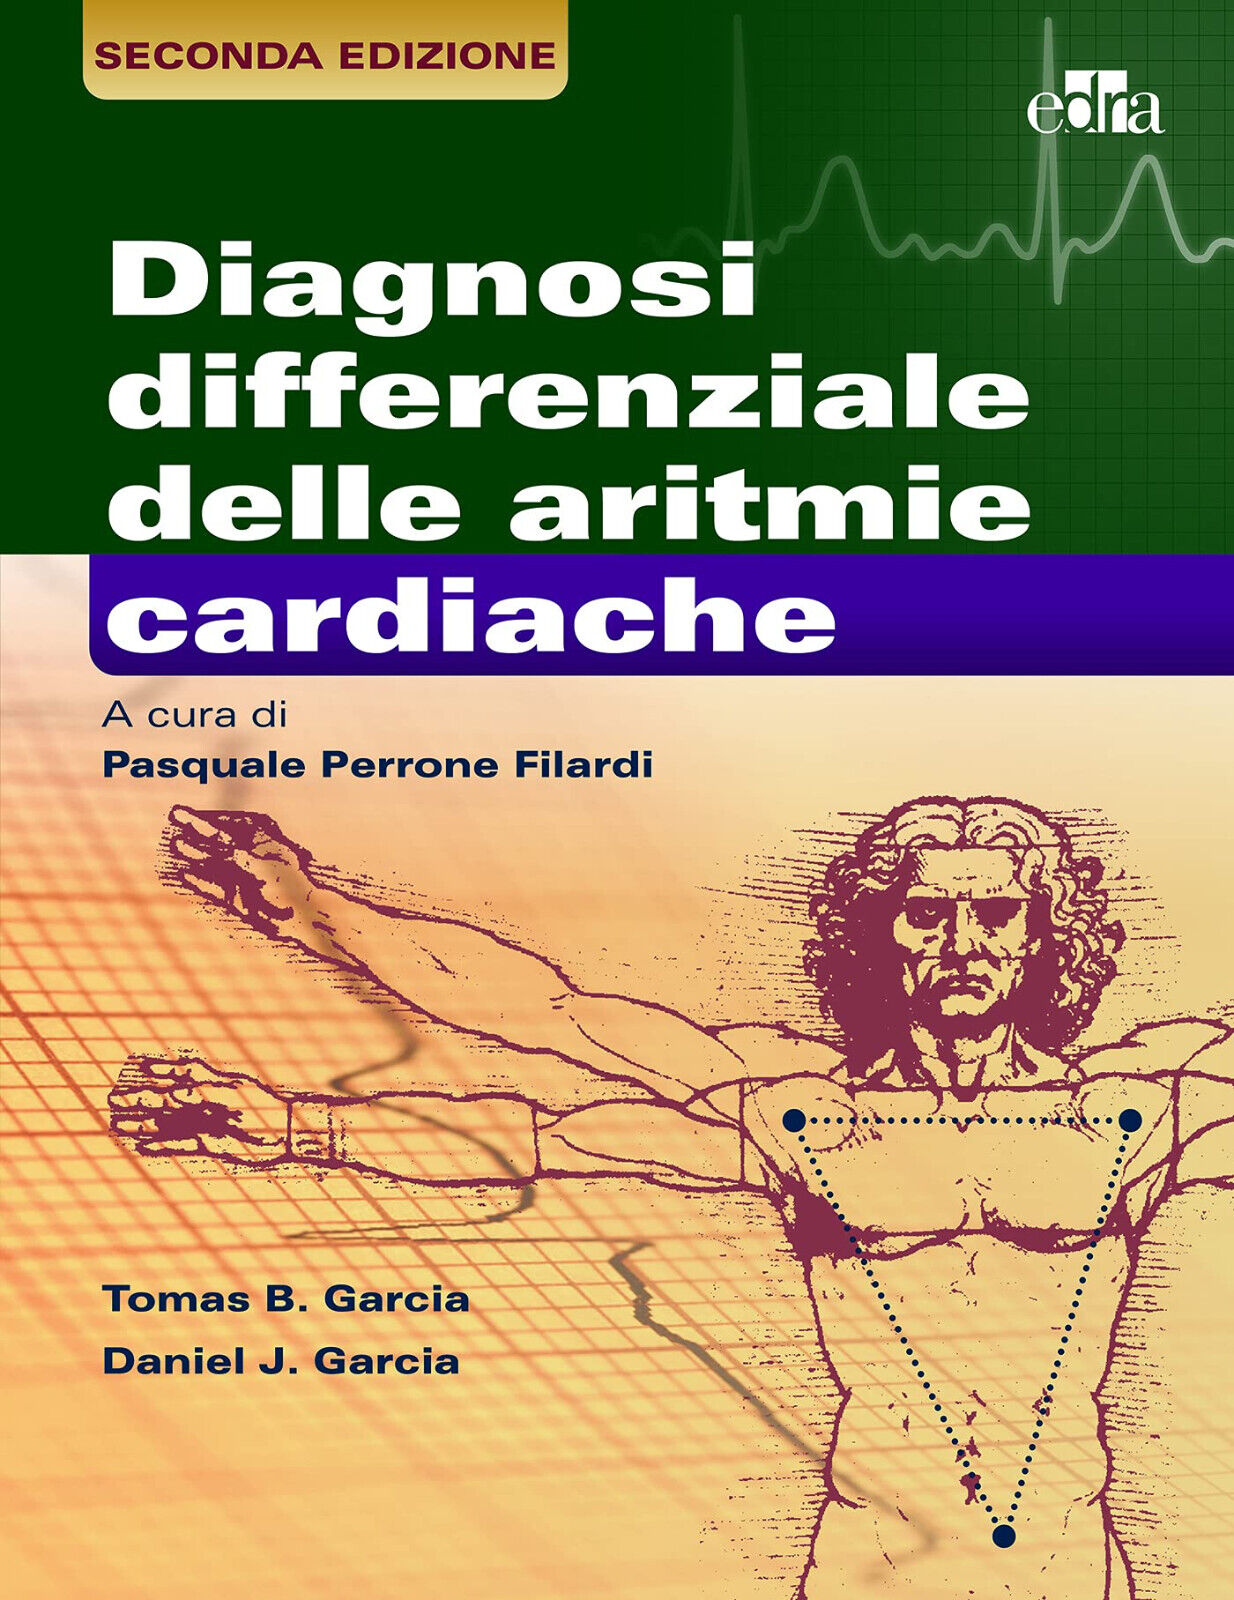 La diagnosi differenziale delle aritmie cardiache - Thomas B. Garcia - Edra,2021